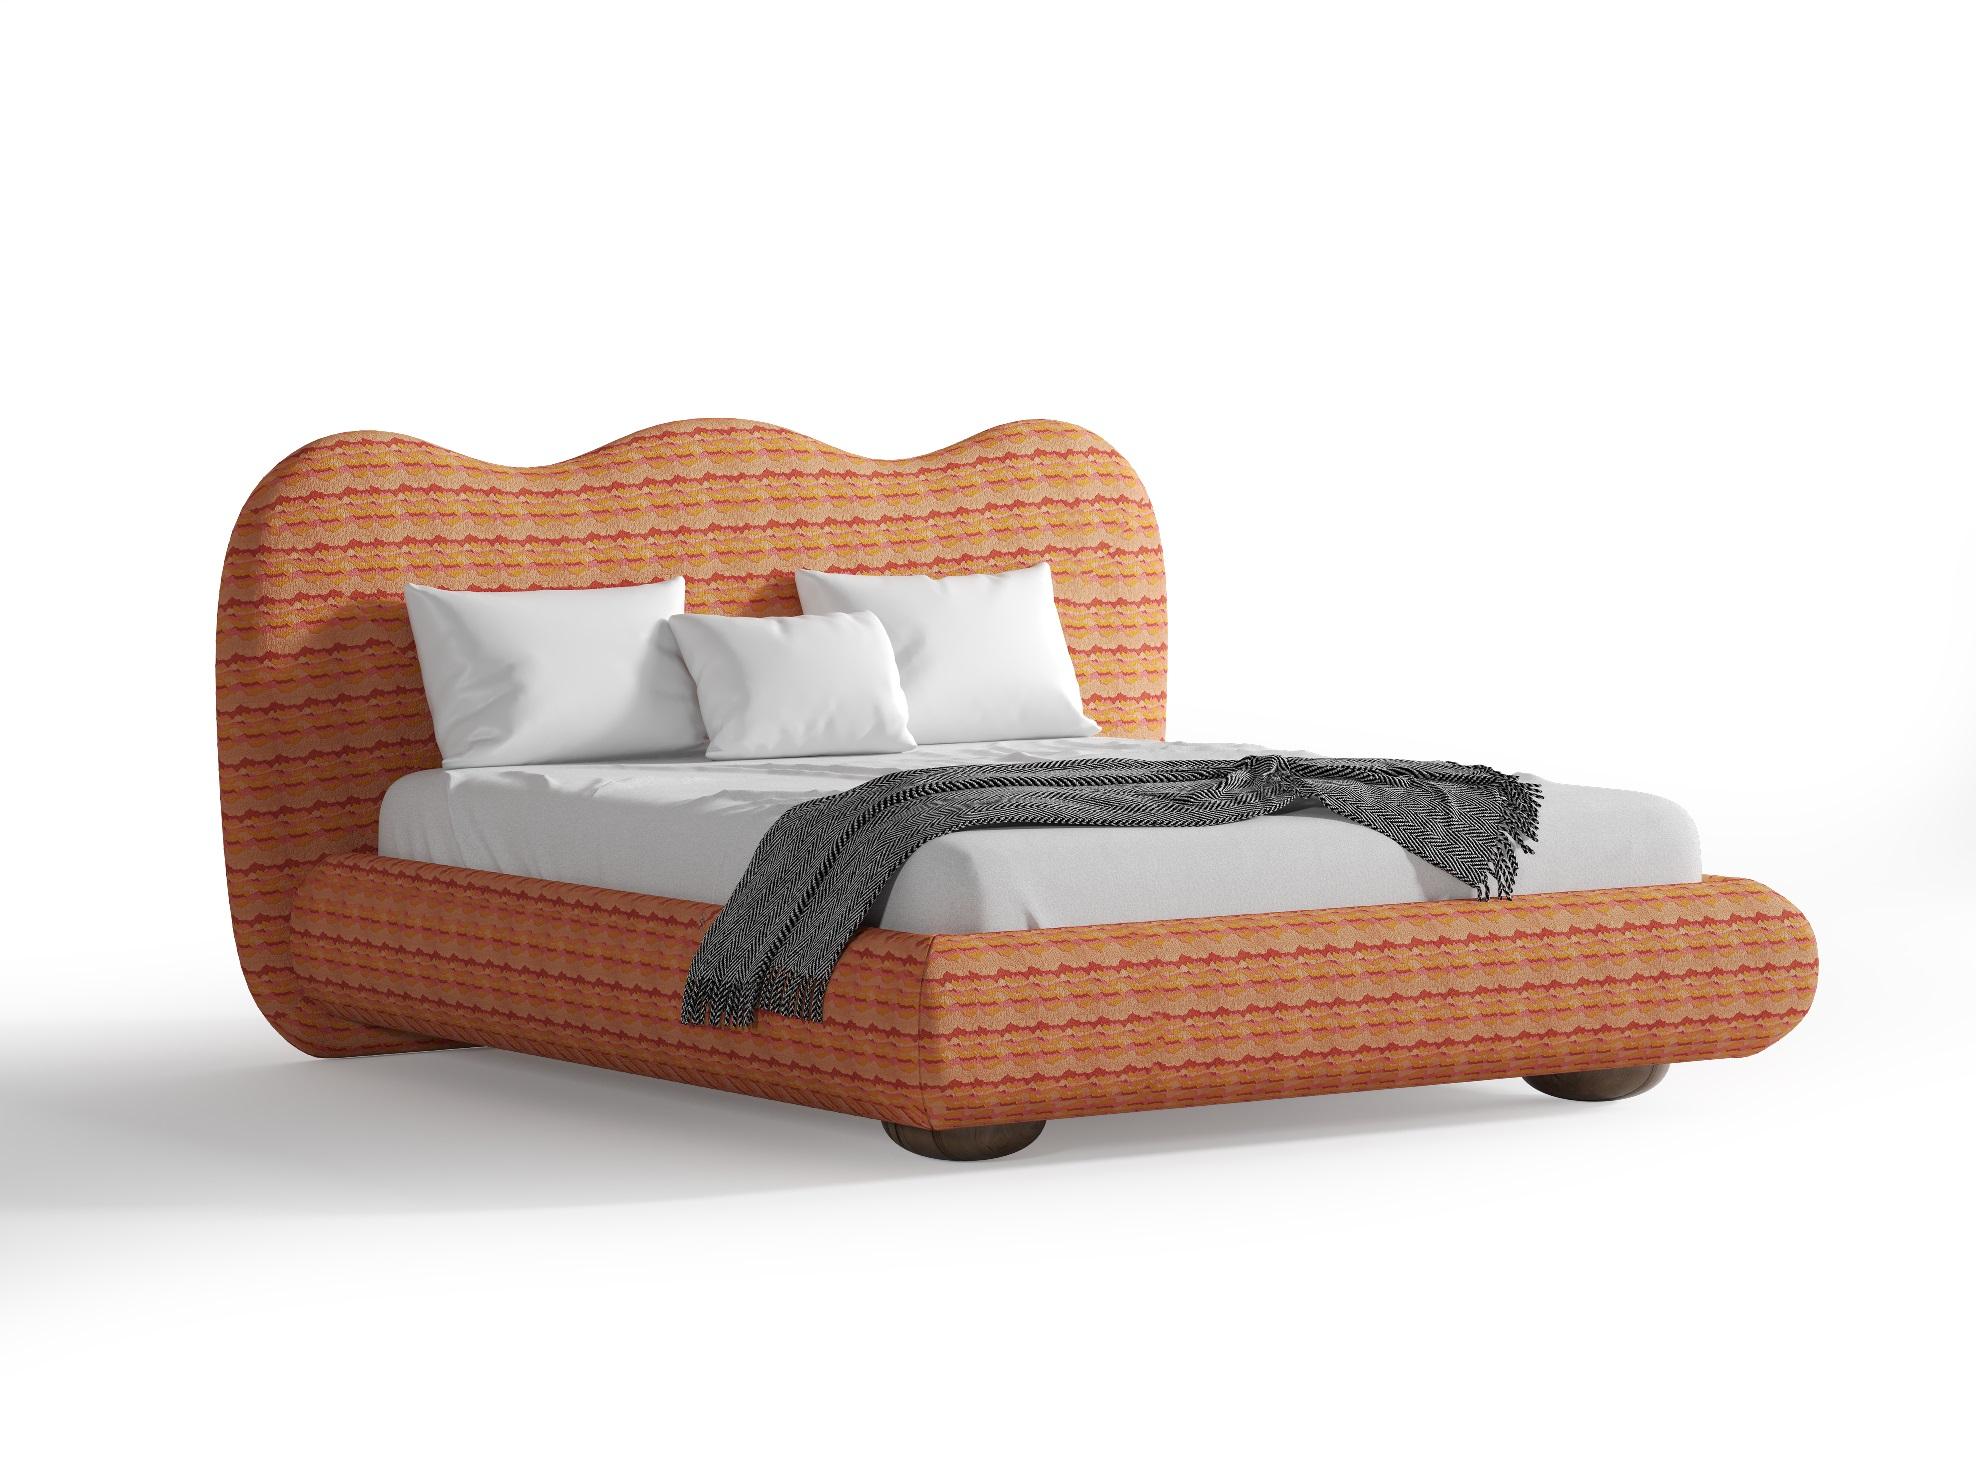 Dandy King Size-Bett in Königsgröße, angeboten in exklusivem Muster, 6 Farben (Moderne) im Angebot